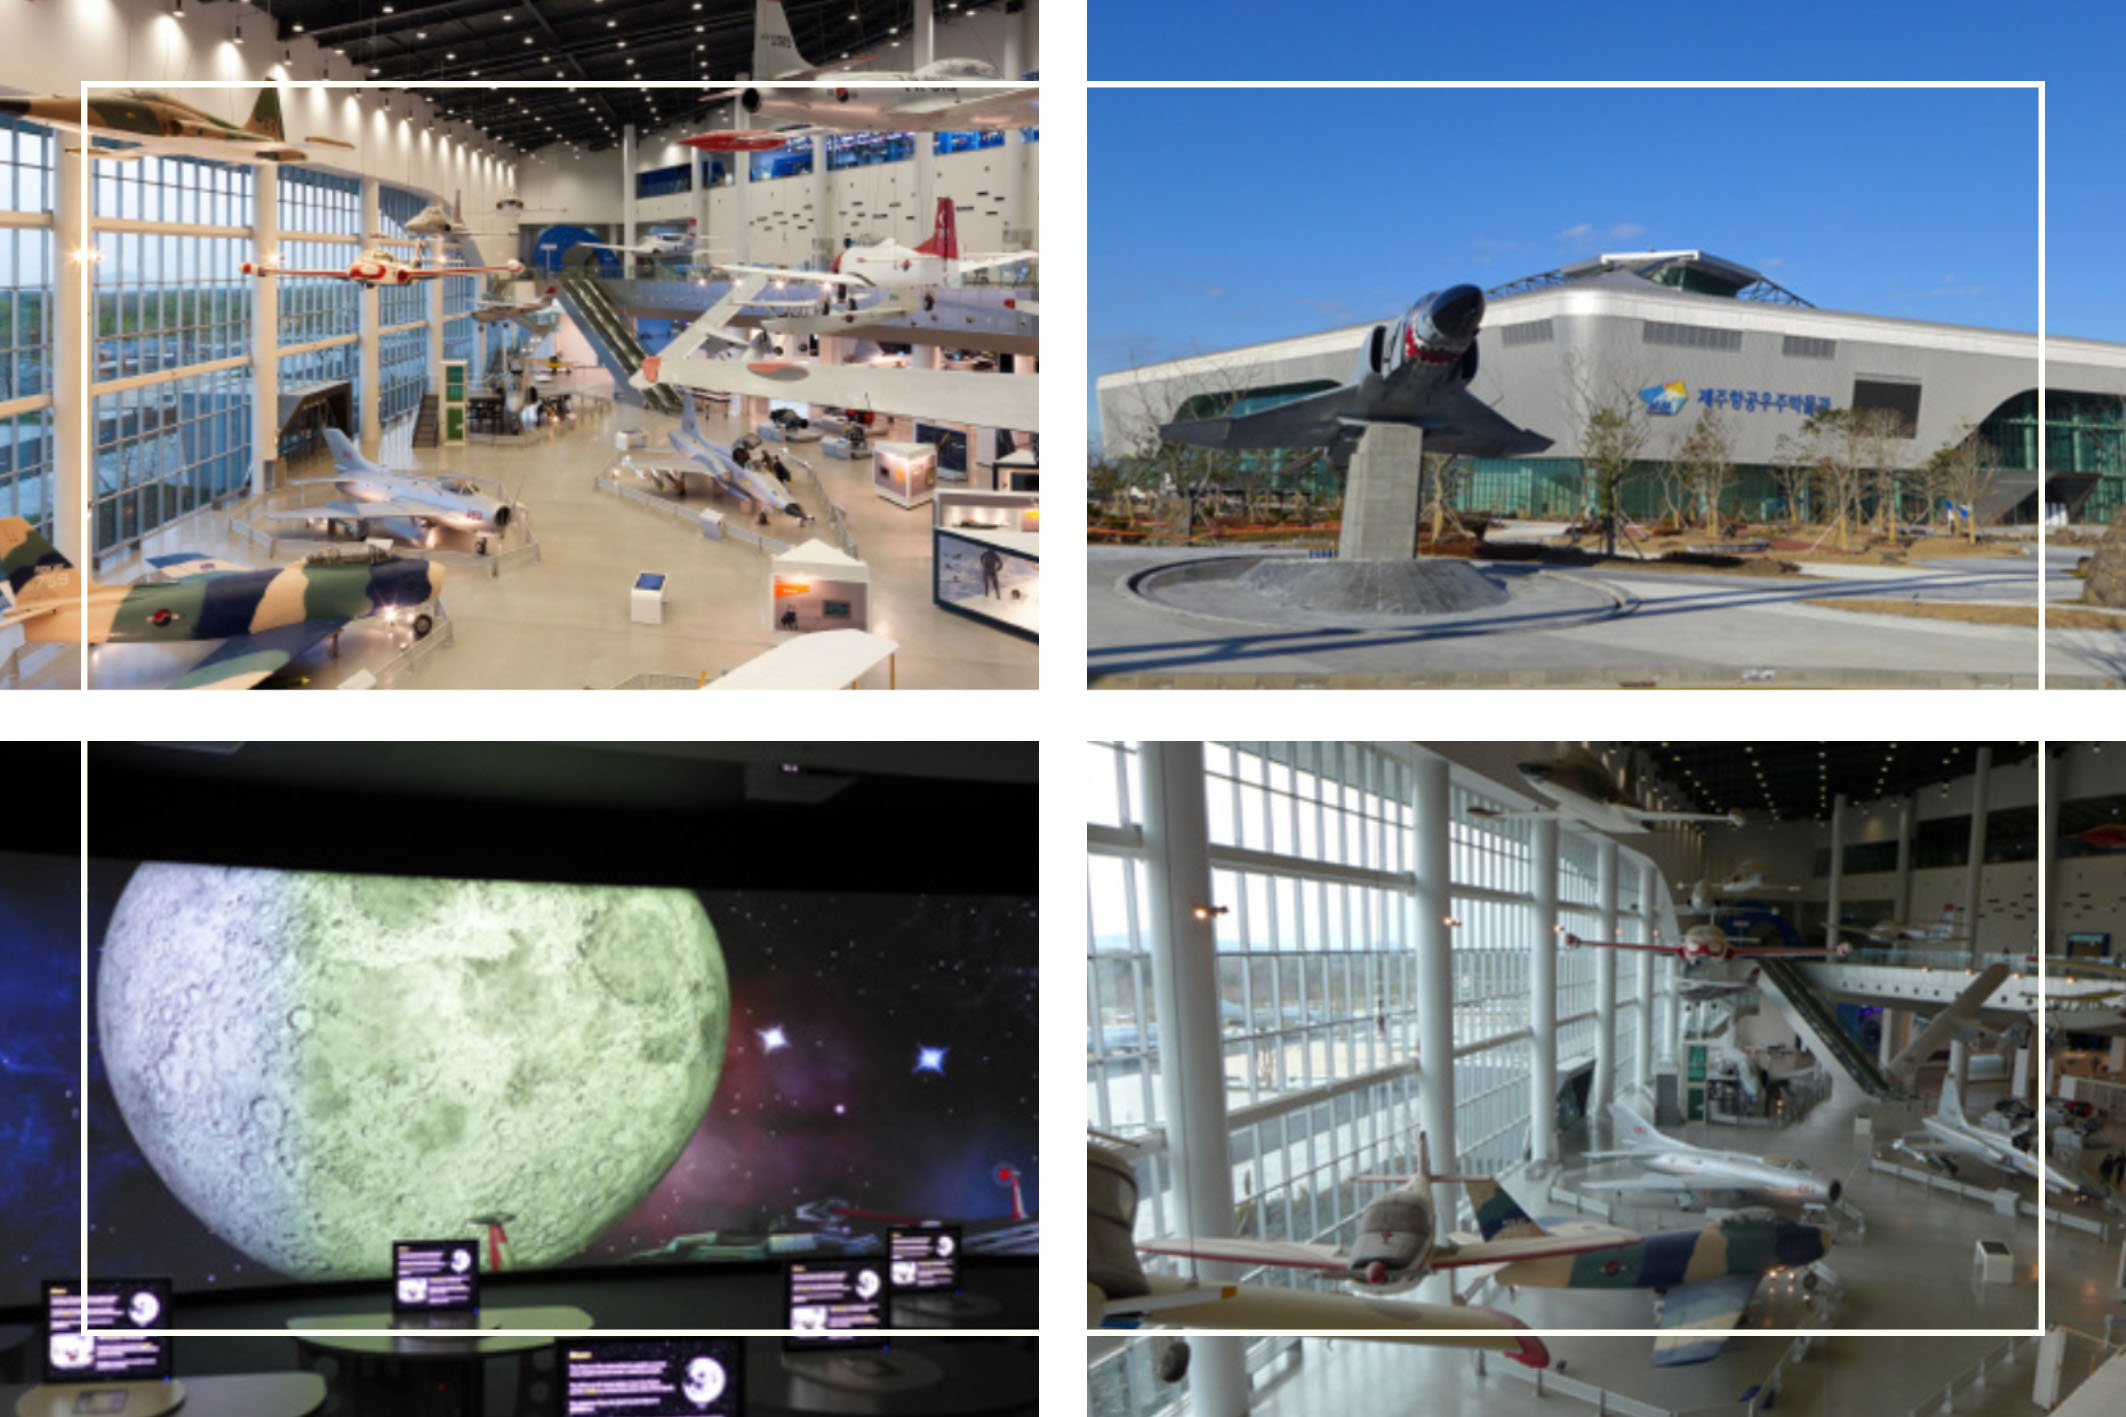 Jeju Aerospace Museum